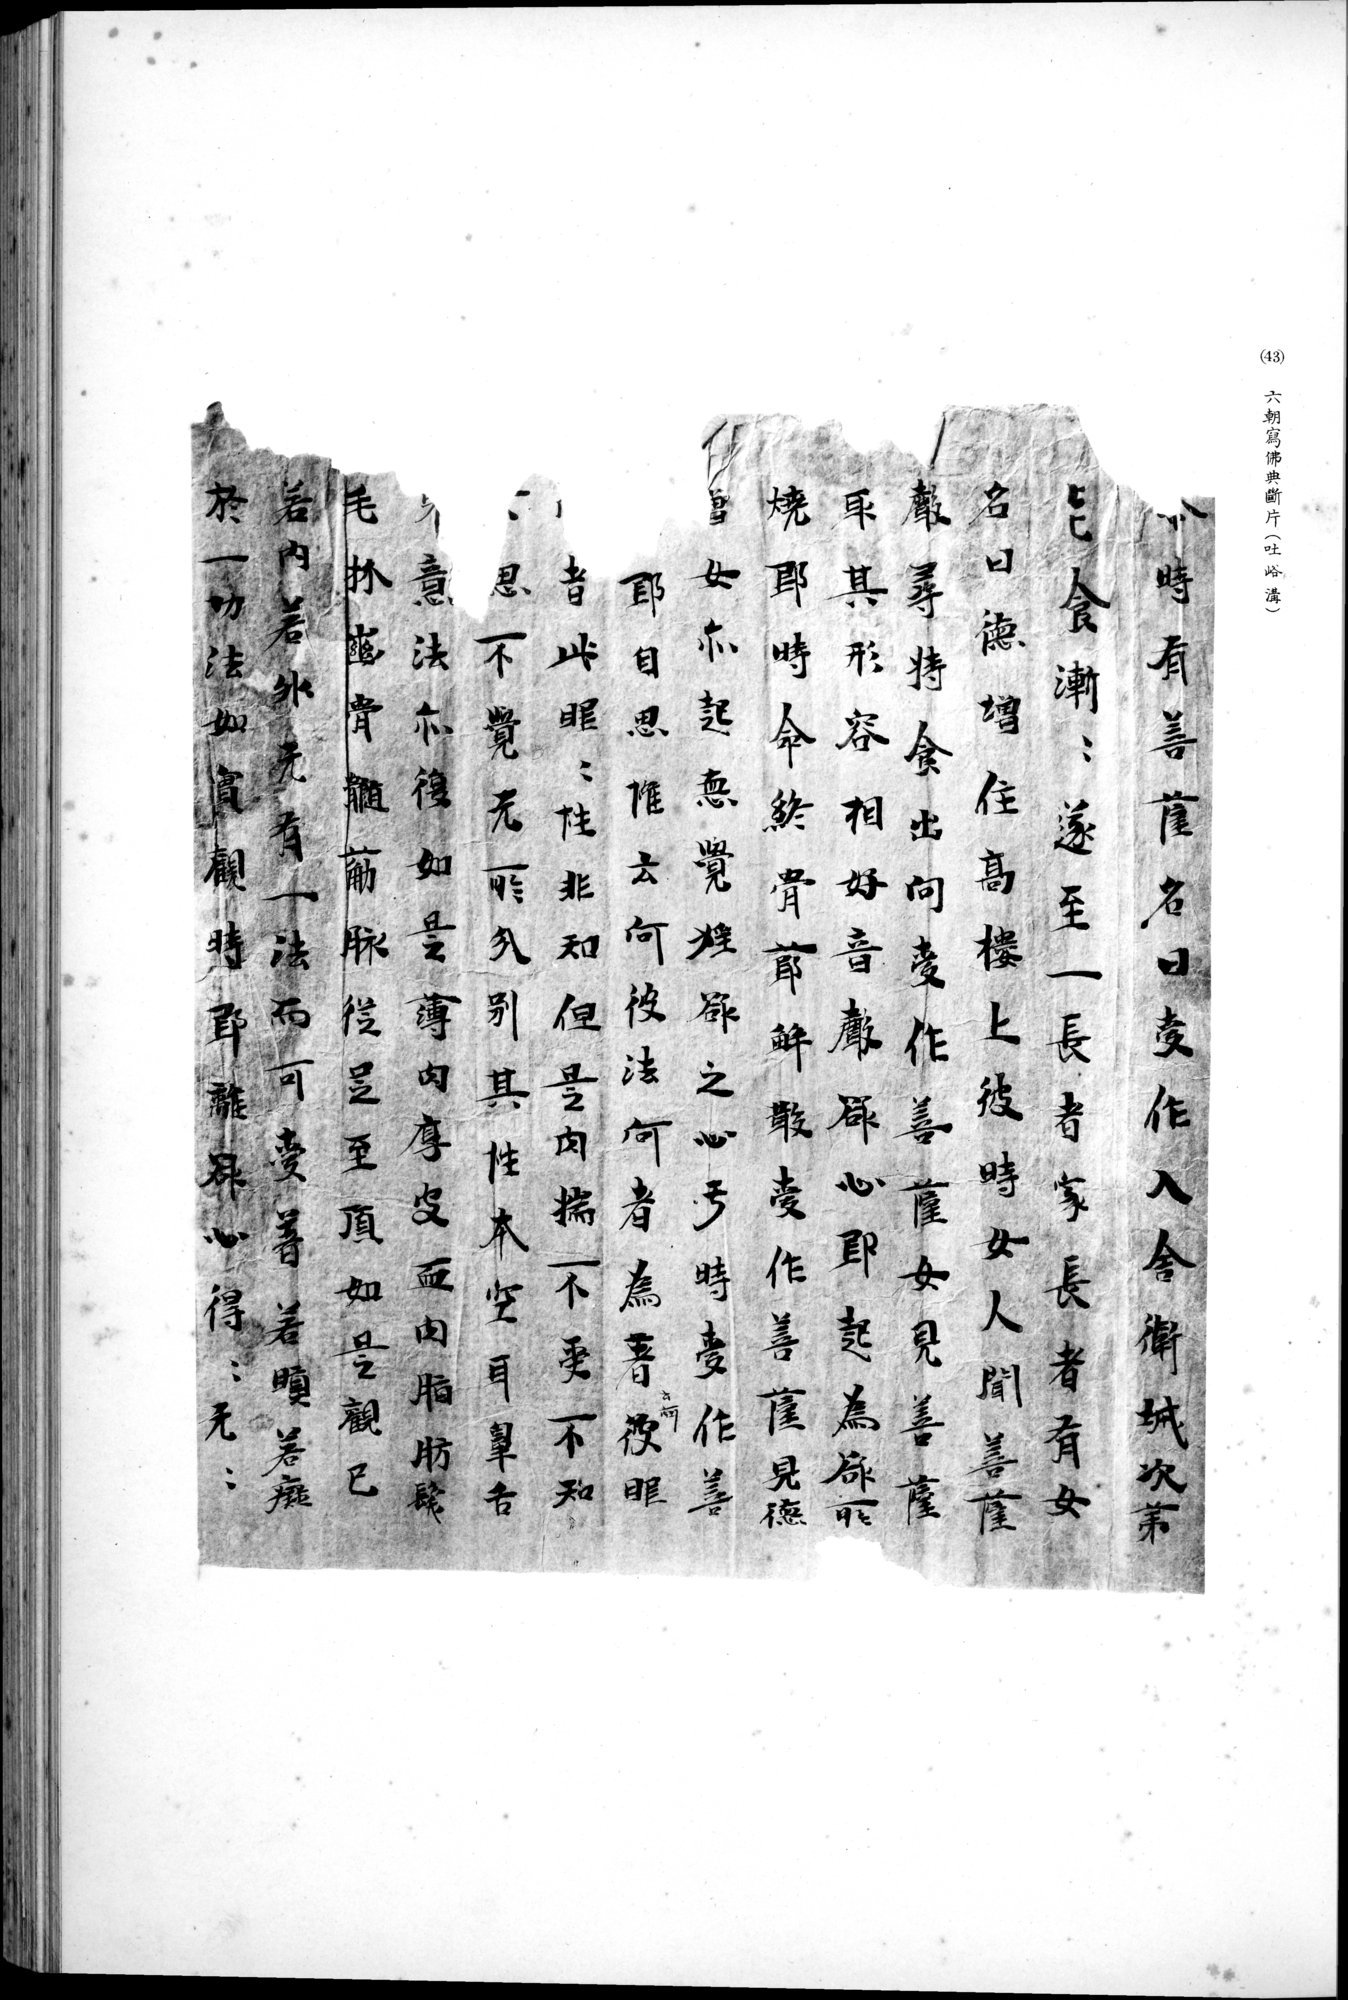 西域考古図譜 : vol.2 / 101 ページ（白黒高解像度画像）